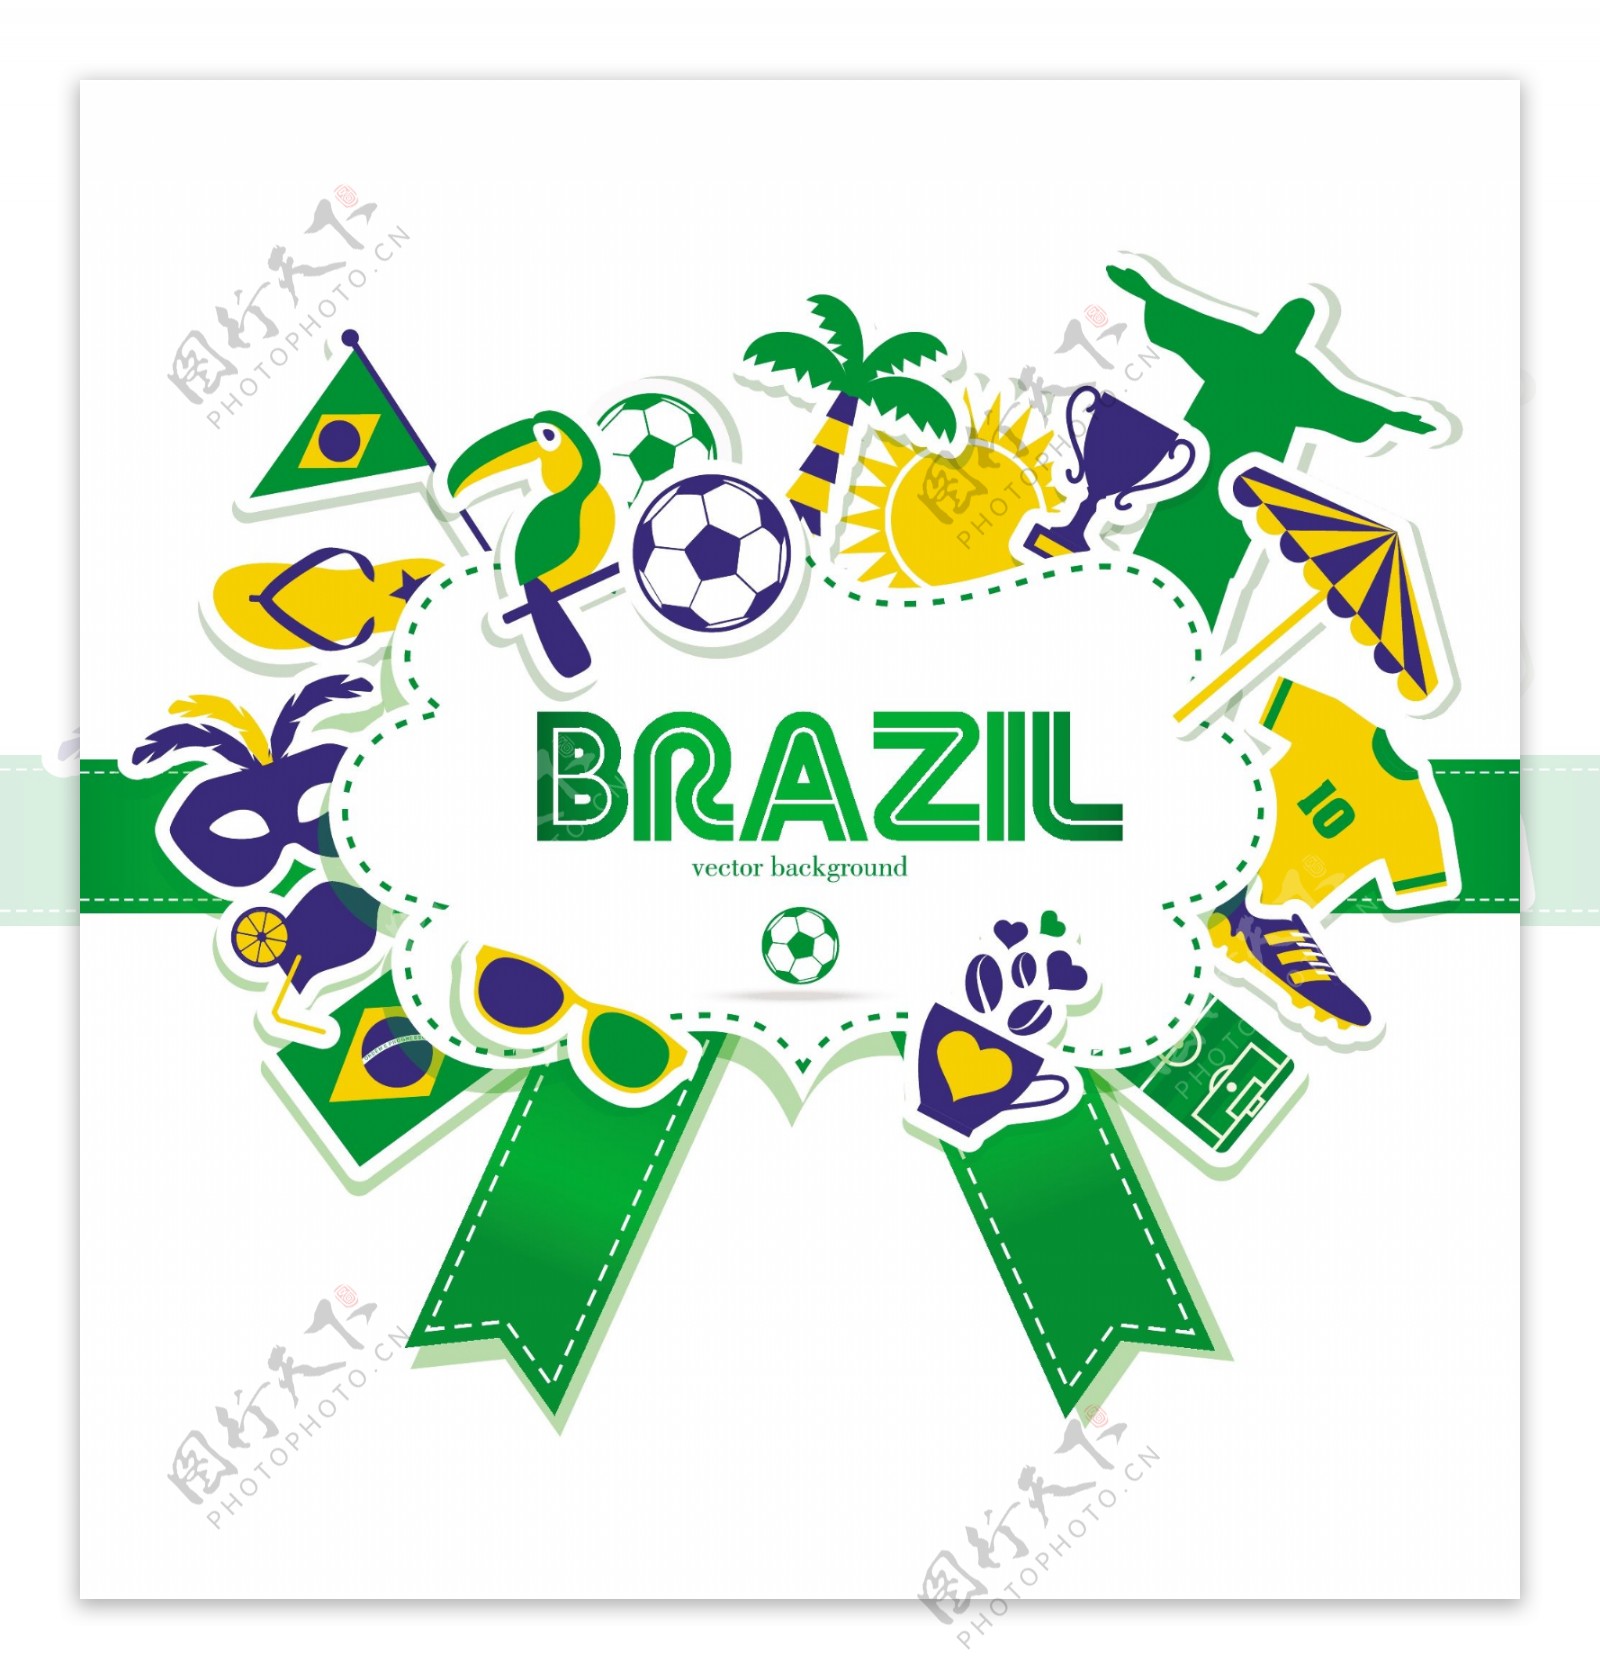 彩色巴西足球标志